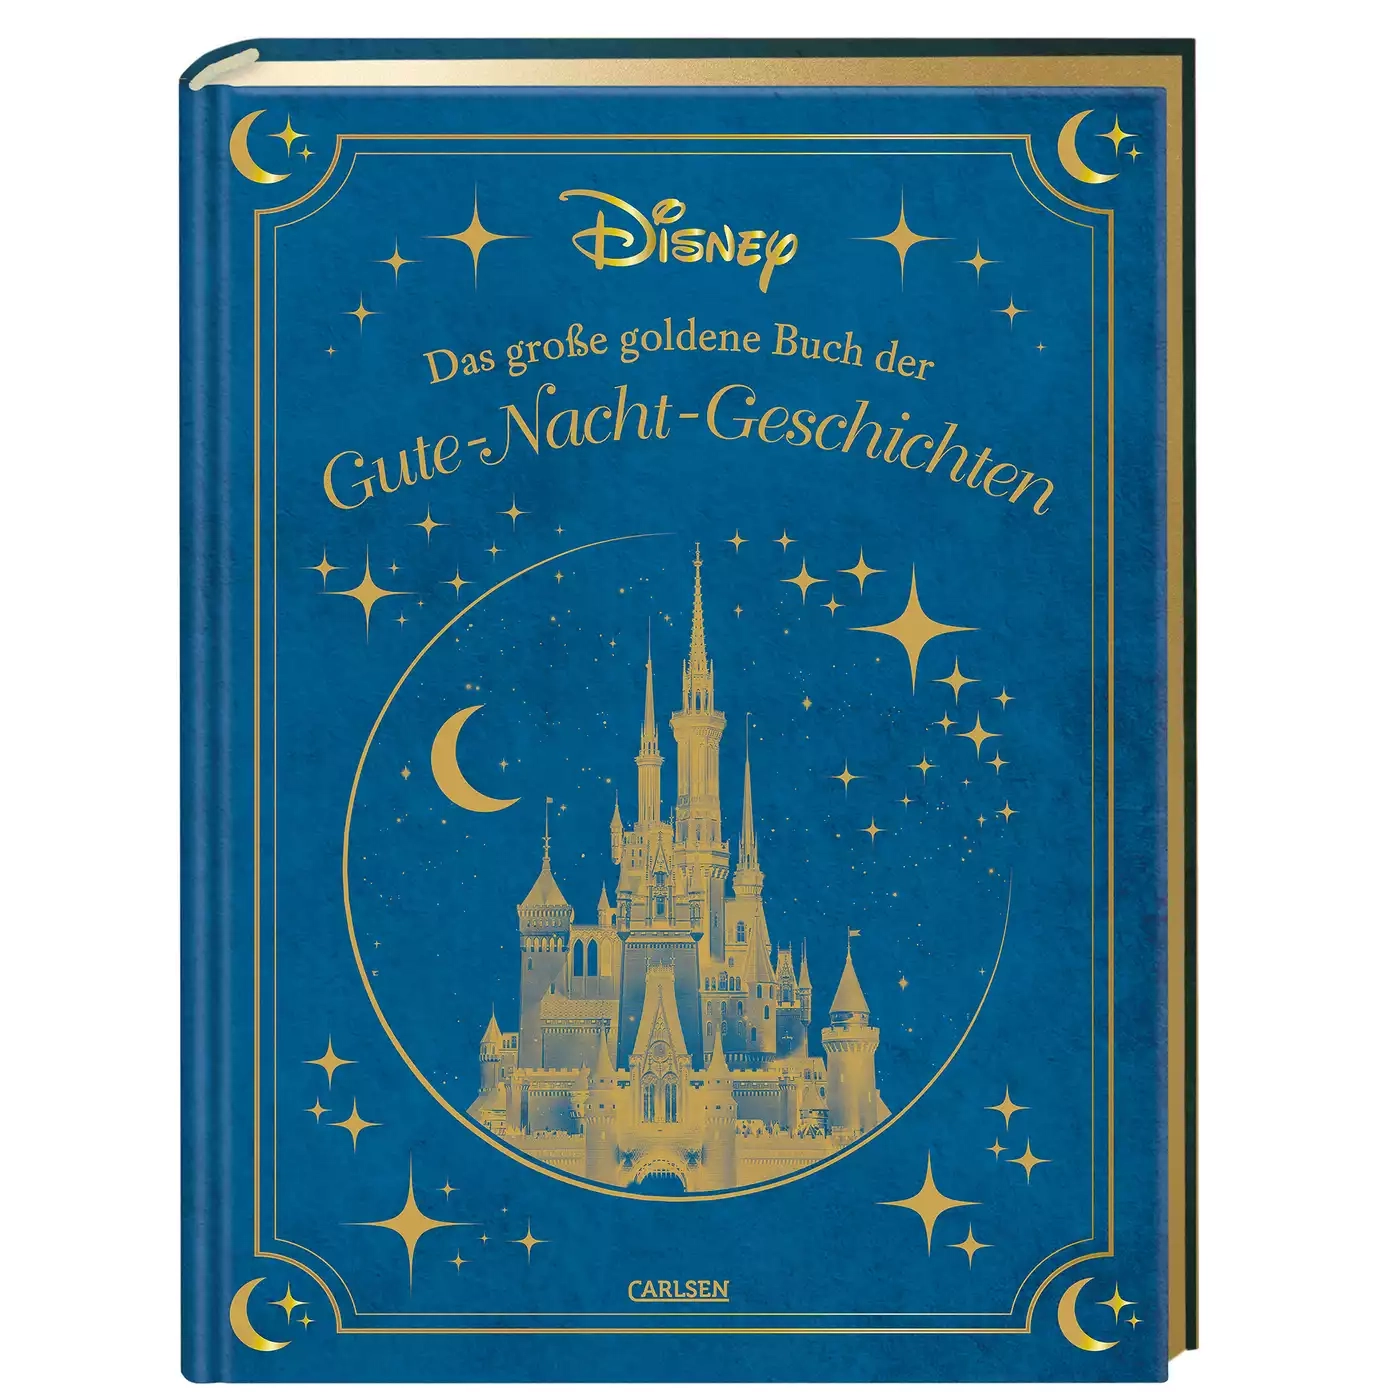 Disney: Das große goldene Buch der Gute-Nacht-Geschichten CARLSEN Blau 2000582216309 3